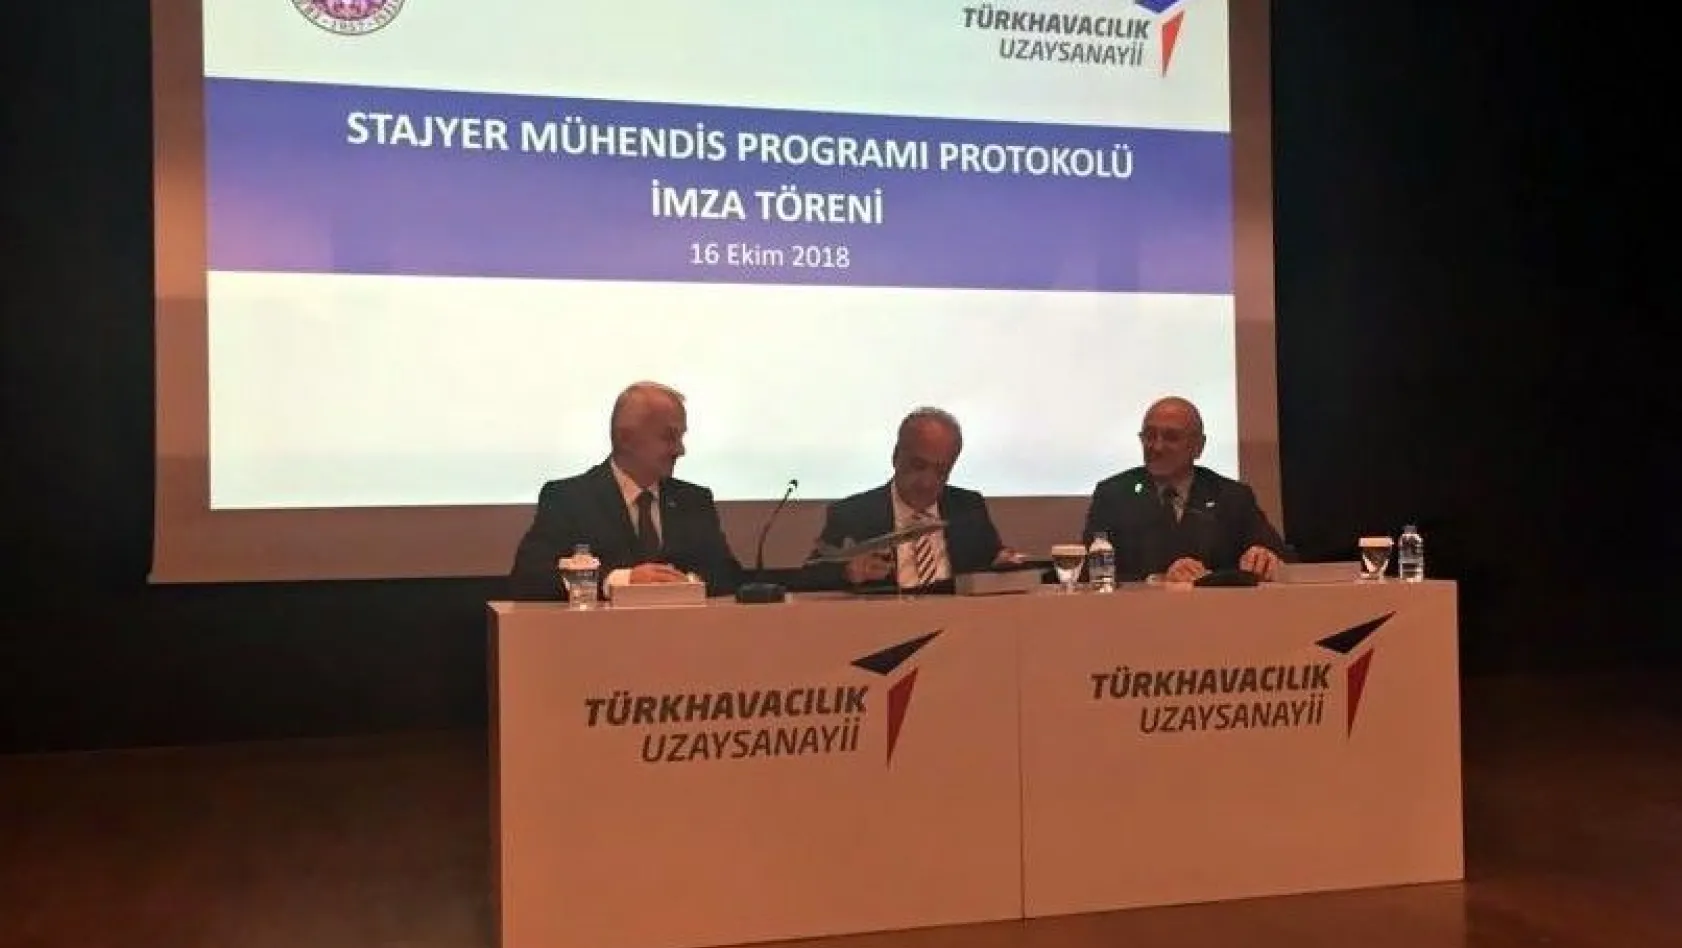 Atatürk Üniversitesi ile TUSAŞ arasında protokol imzalandı
